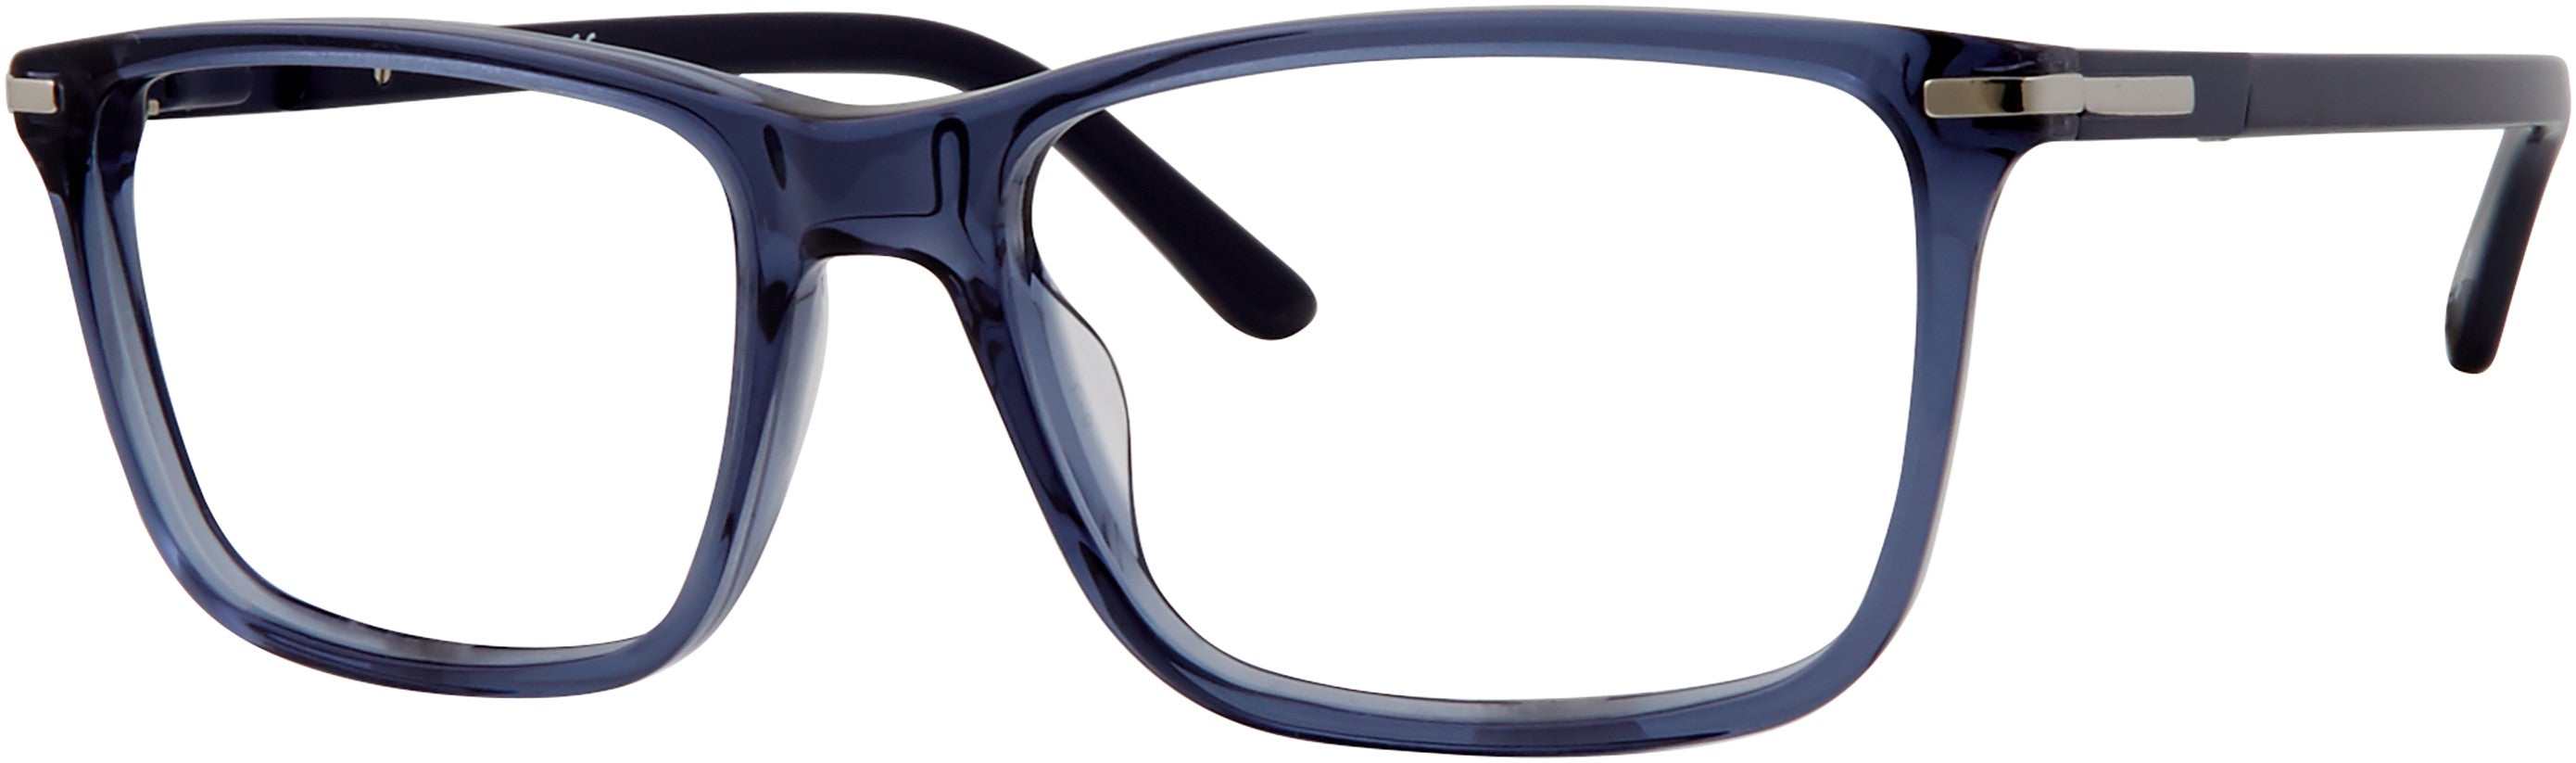  Claiborne 318 Rectangular Eyeglasses 0OXZ-0OXZ  Blue Crystal (00 Demo Lens)